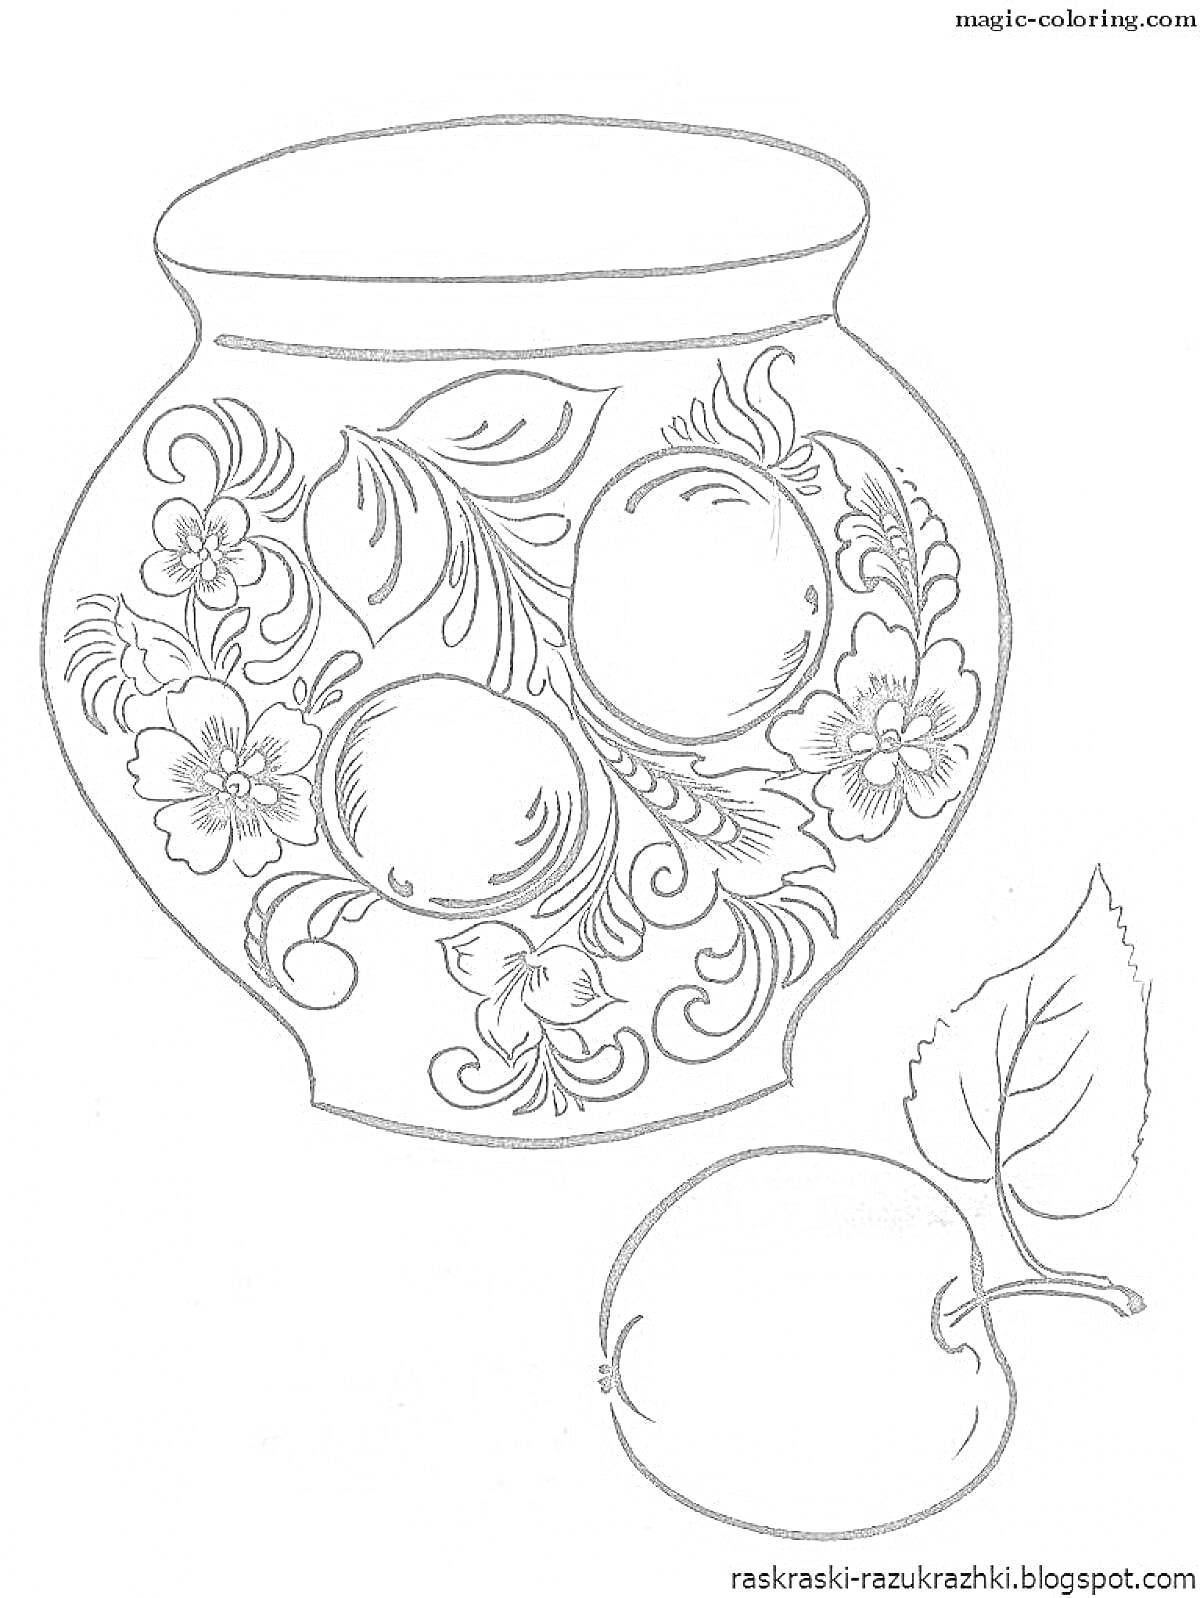 Раскраска Ваза с хохломской росписью, включающей цветы и спелые яблоки, расположенная рядом с изображением отдельно лежащего яблока с листом